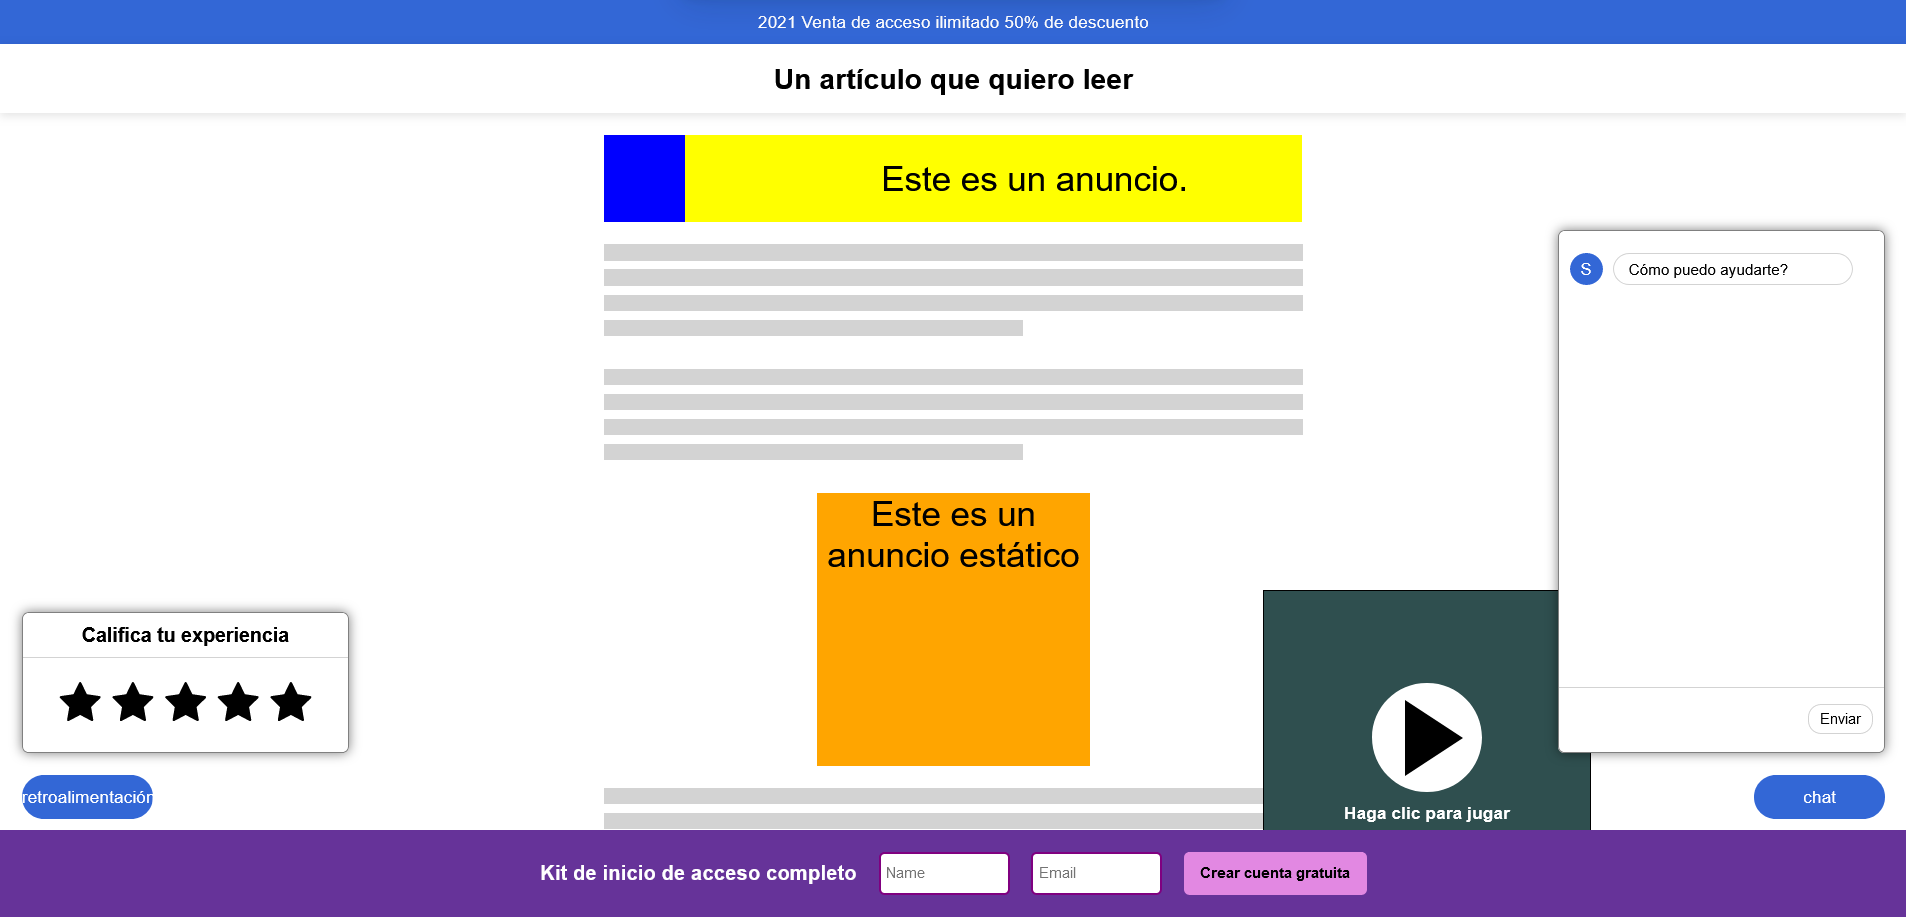 Captura de pantalla del recurso comentado donde se puede ver una web actual llena de publicidad e impedimentos para ser leída cómodamente